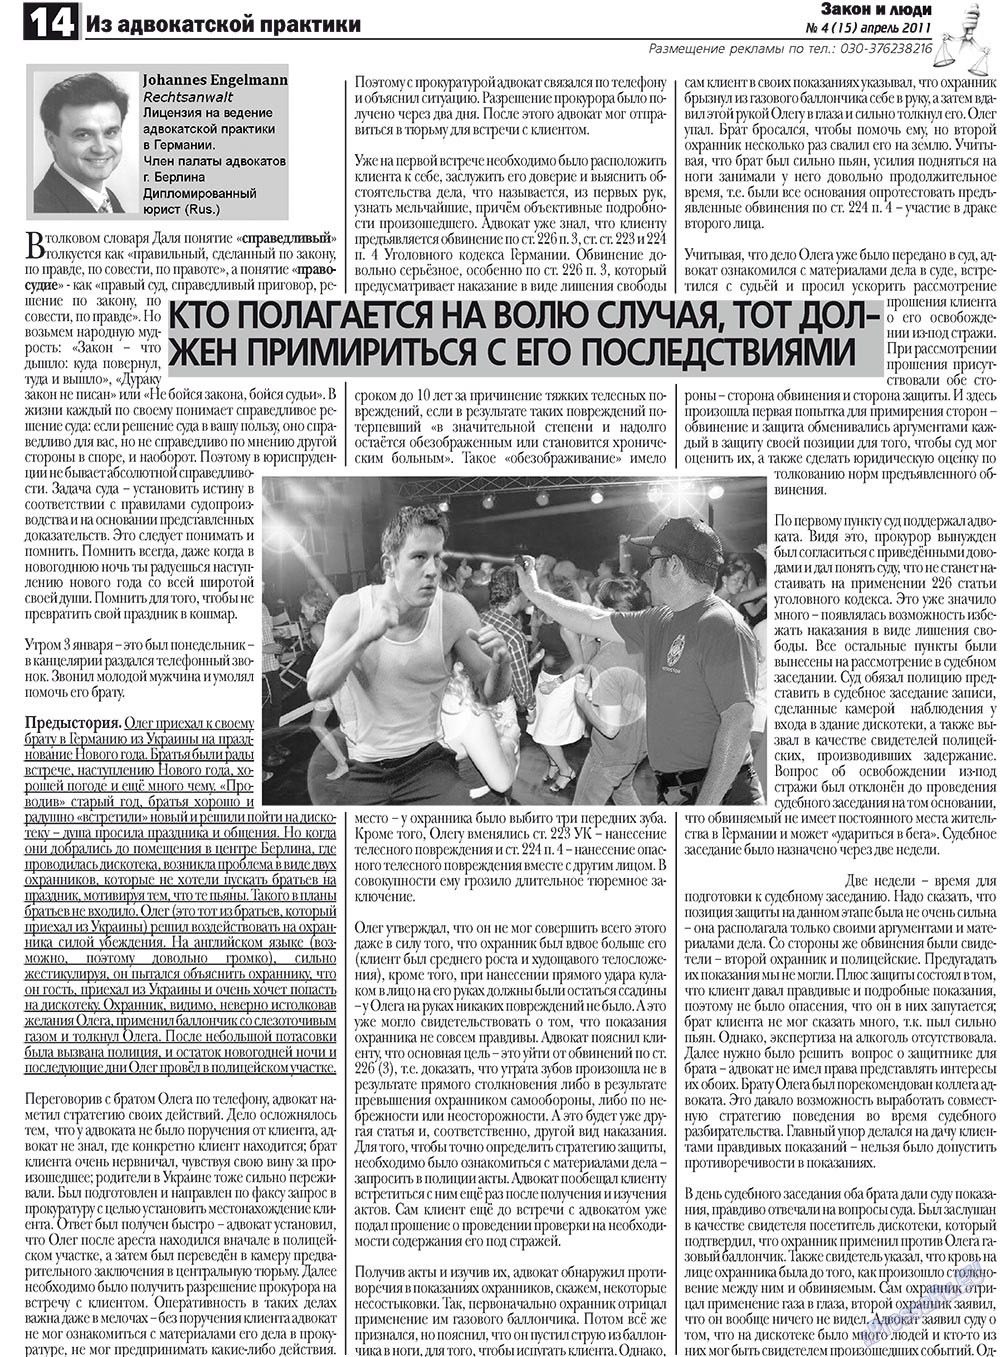 Закон и люди, газета. 2011 №4 стр.14